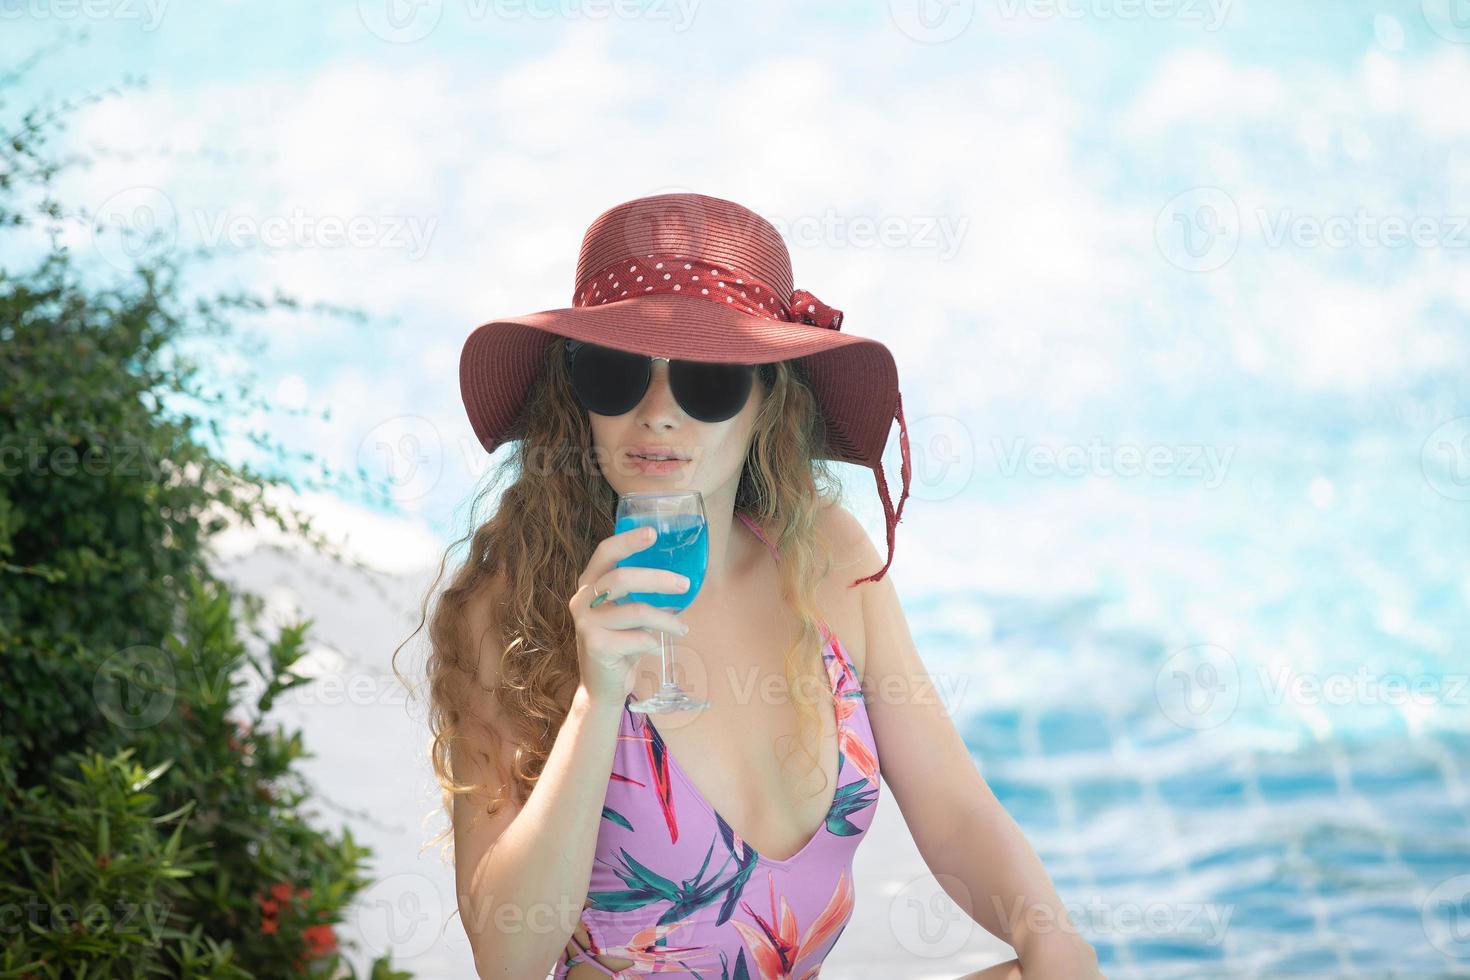 as mulheres usam biquínis e bebem coquetéis no verão quente na piscina. foto